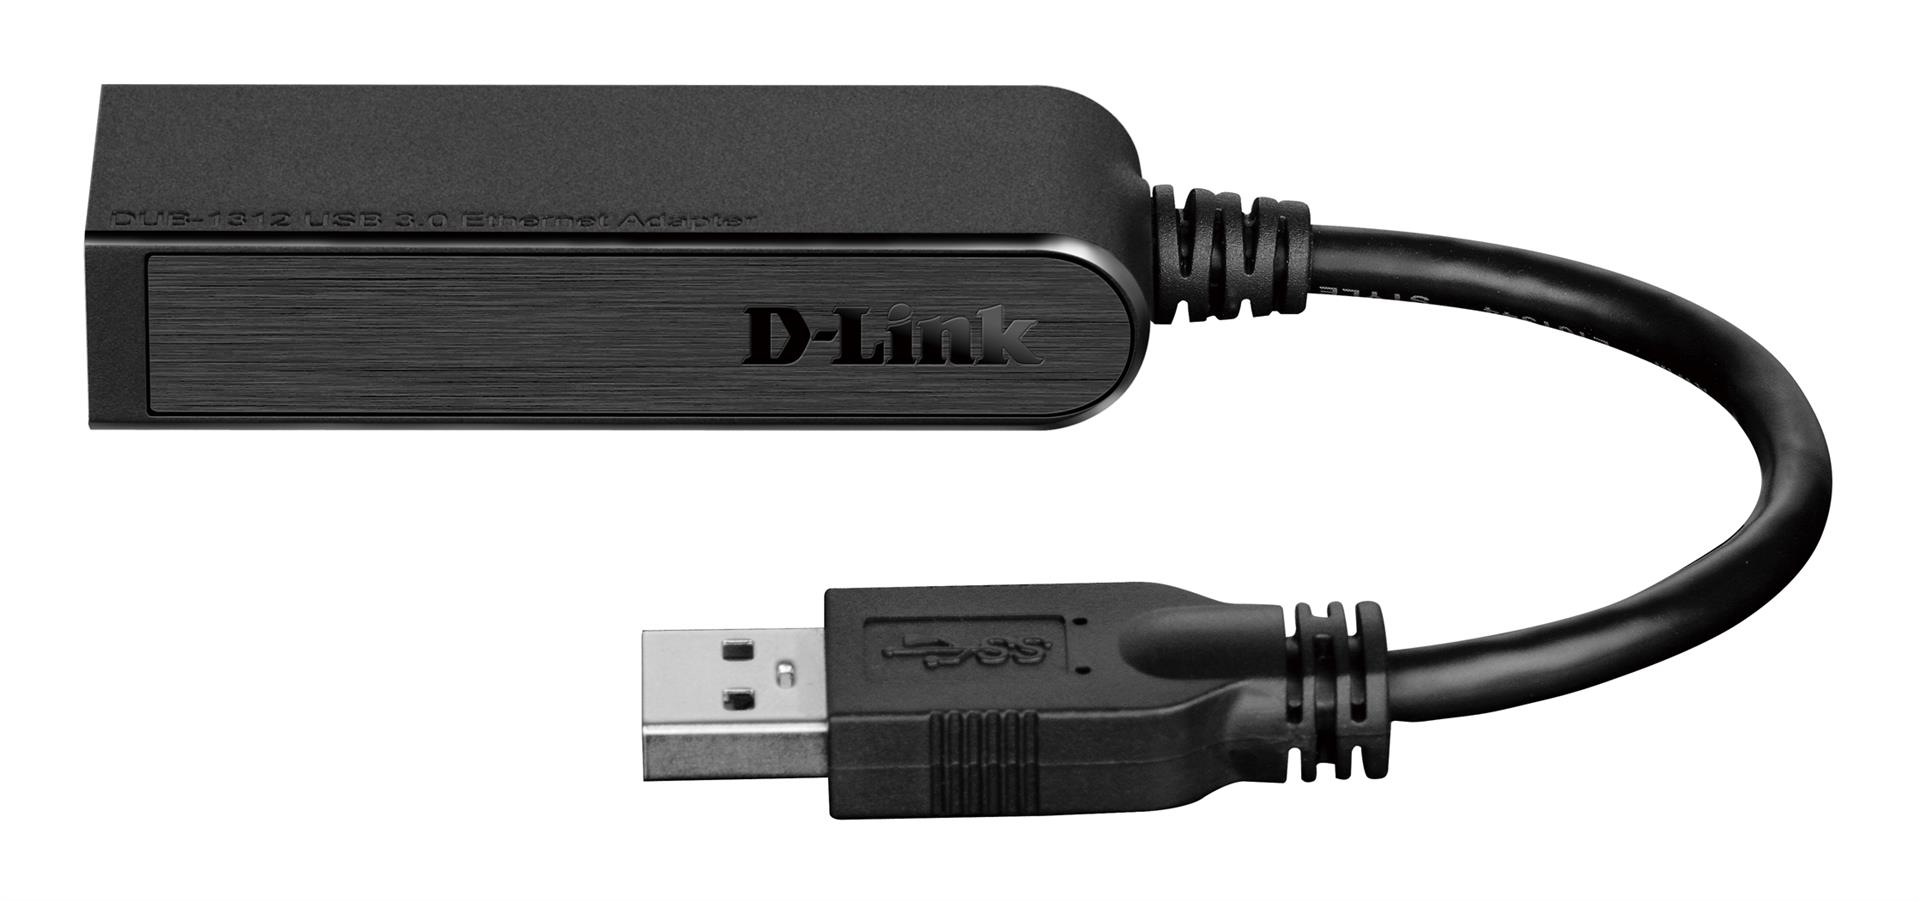 Obrázek D-Link DUB-1312 USB 3.0 Gigabit Adapter